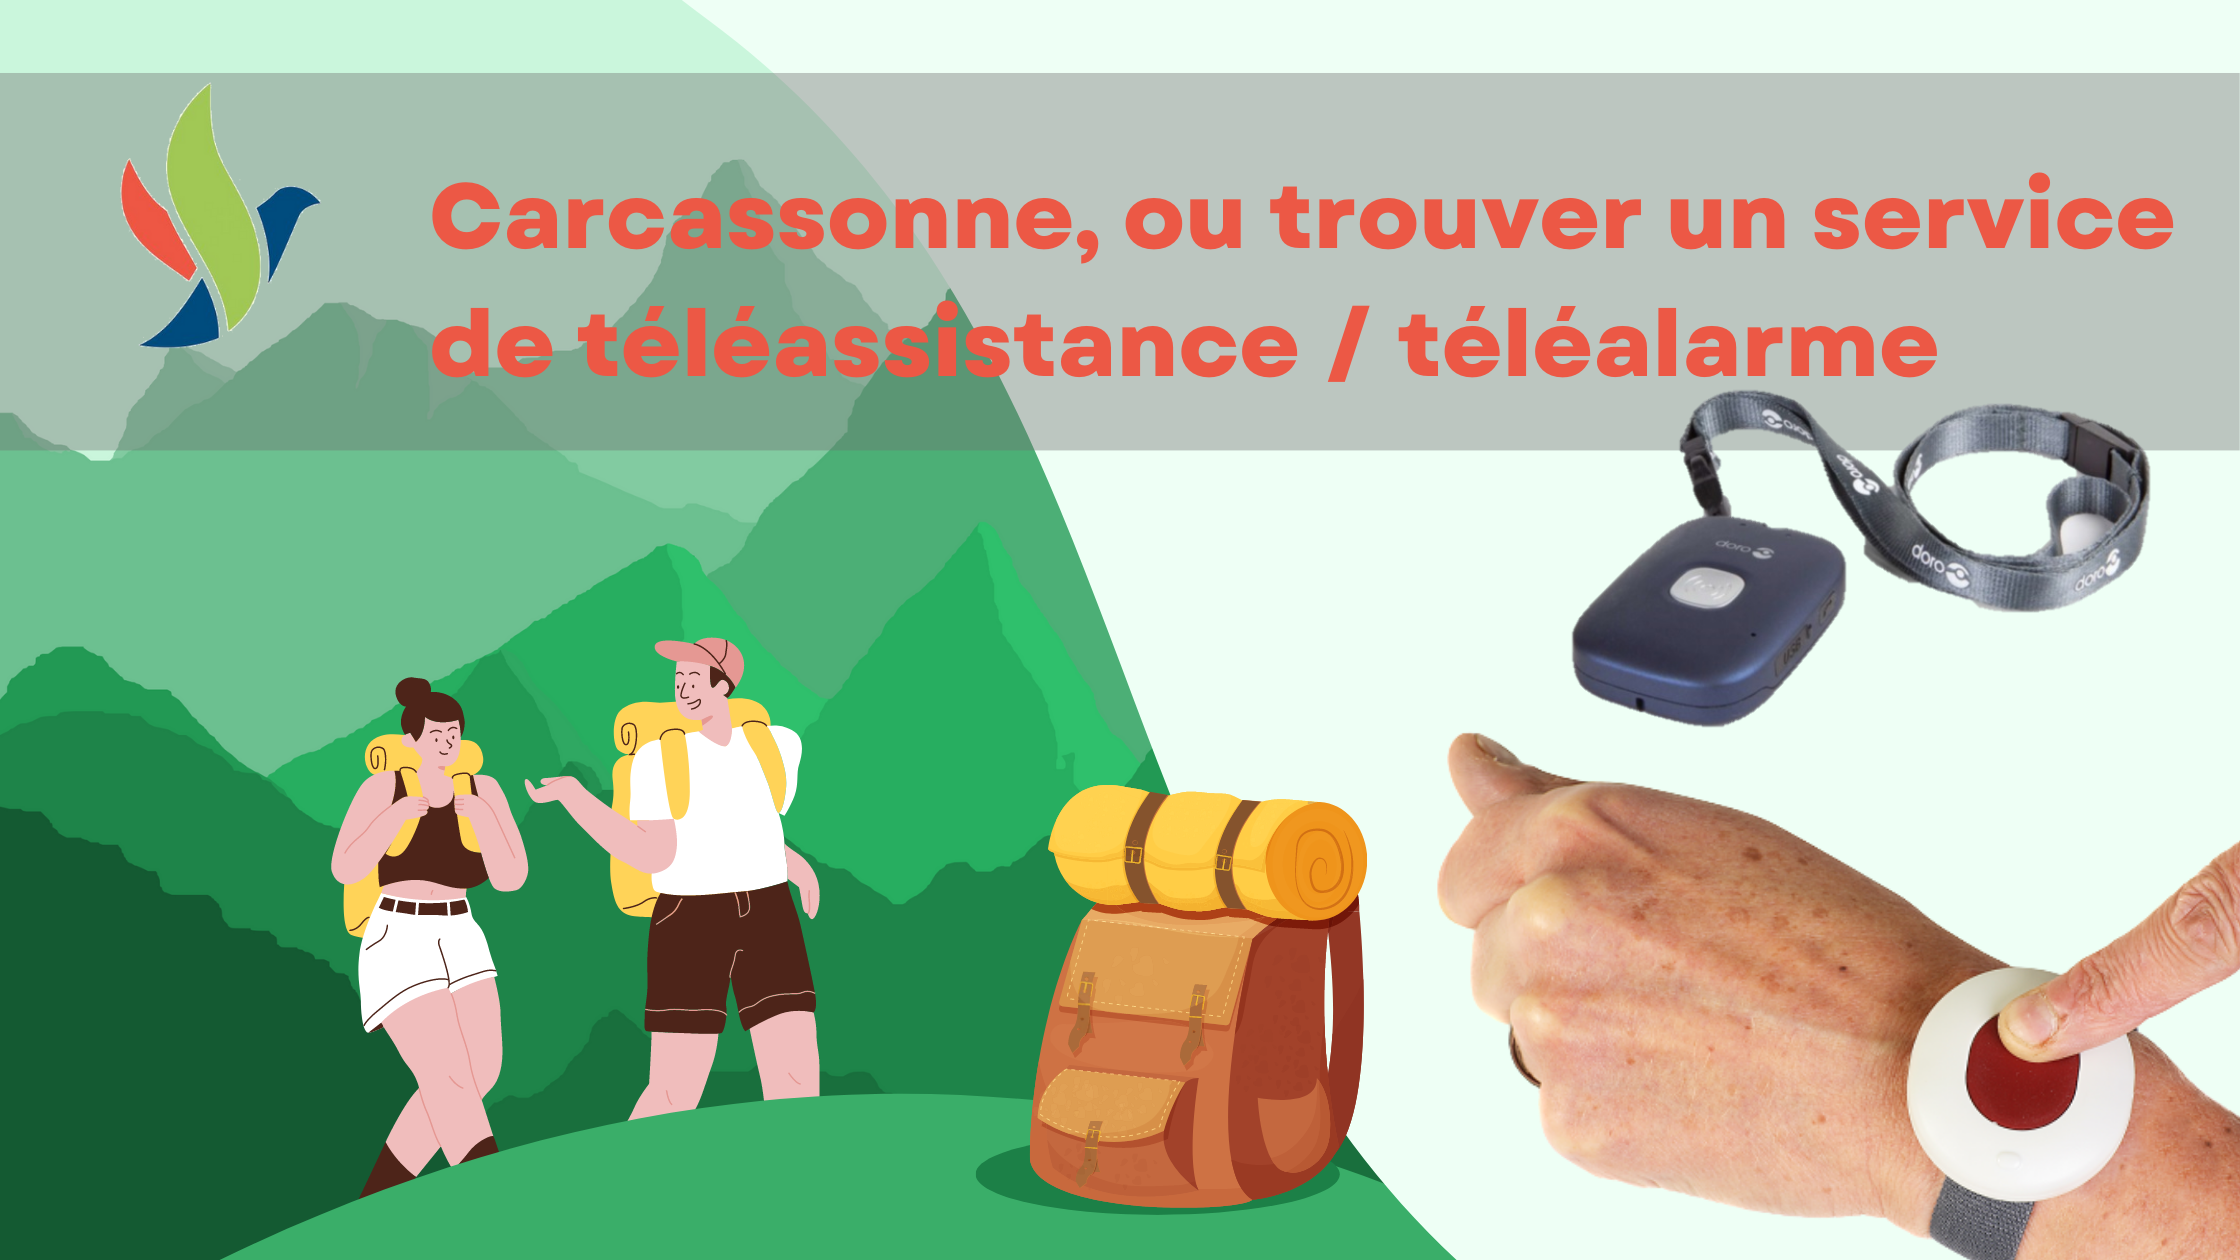 Carcassonne téléalarme, téléassistance seniors (1)